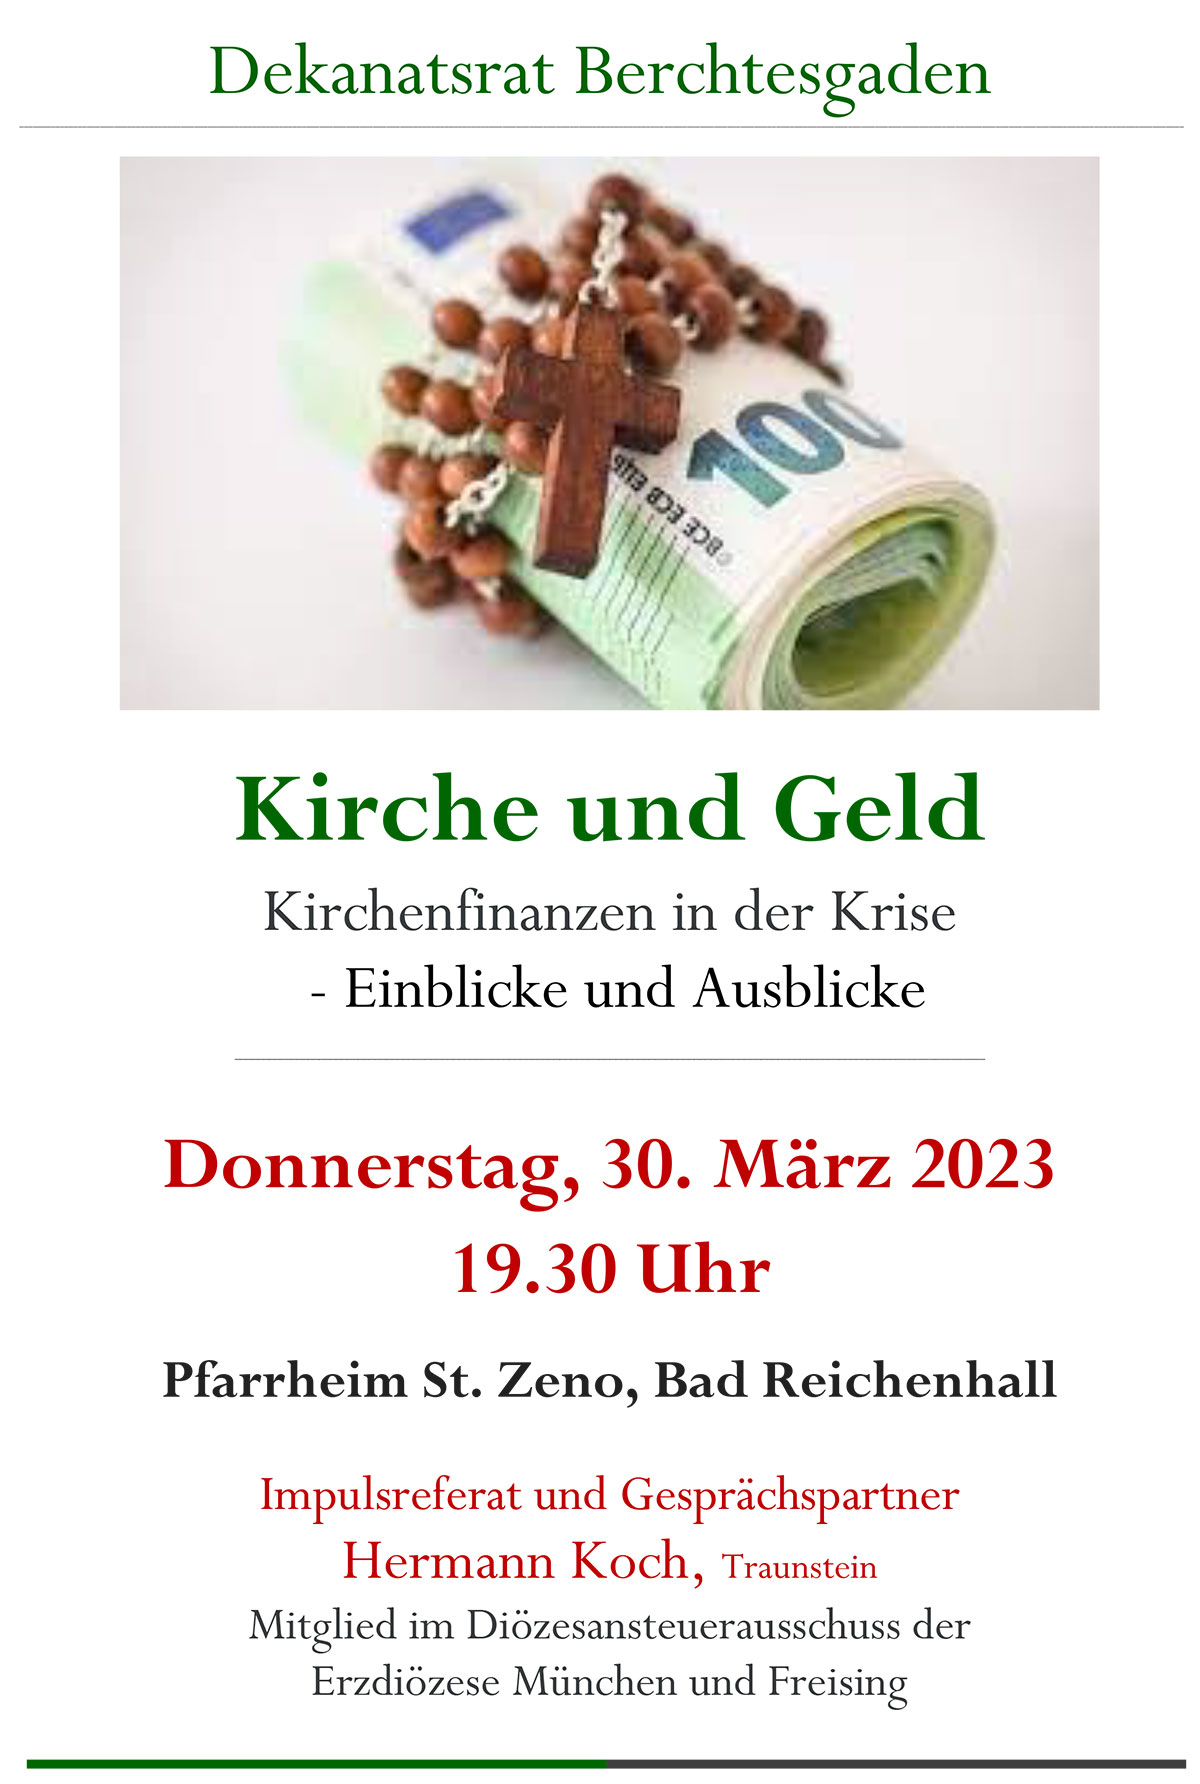 Einladung zur Dekanatsratsvollversammlung am 30. März 2023, 19:30 Uhr, im Pfarrheim St. Zeno in Bad Reichenhall